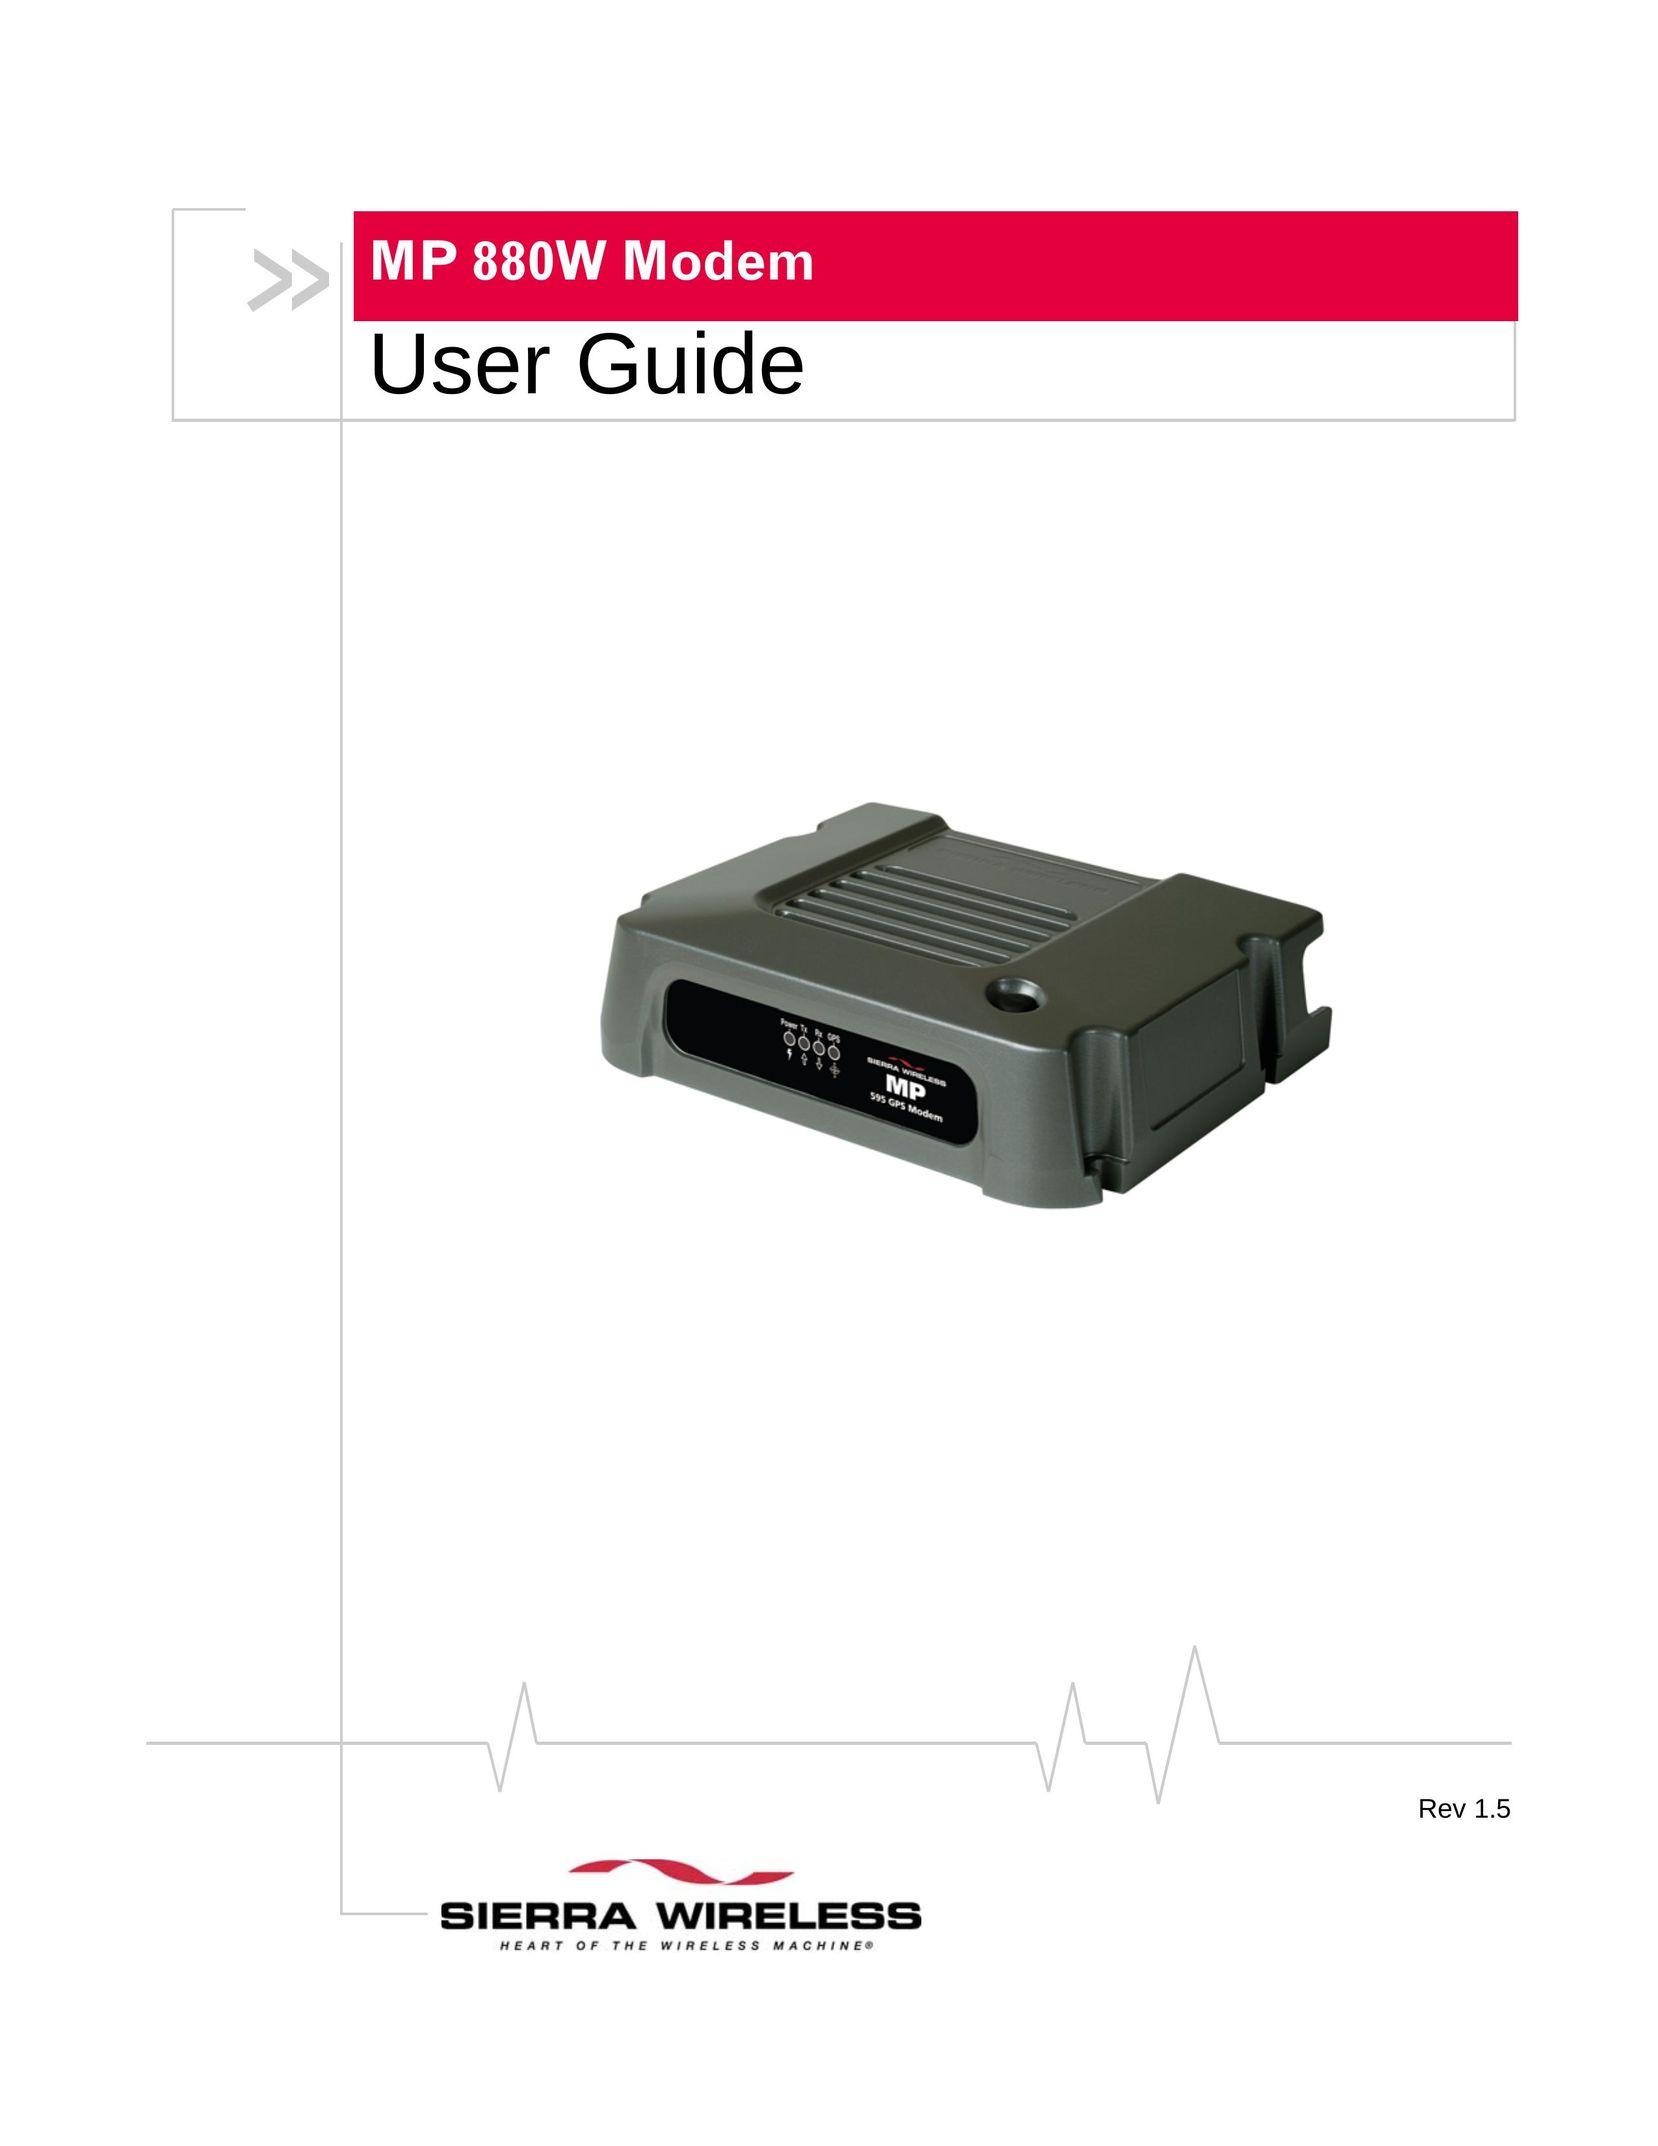 Sierra Wireless MP 880W Network Router User Manual